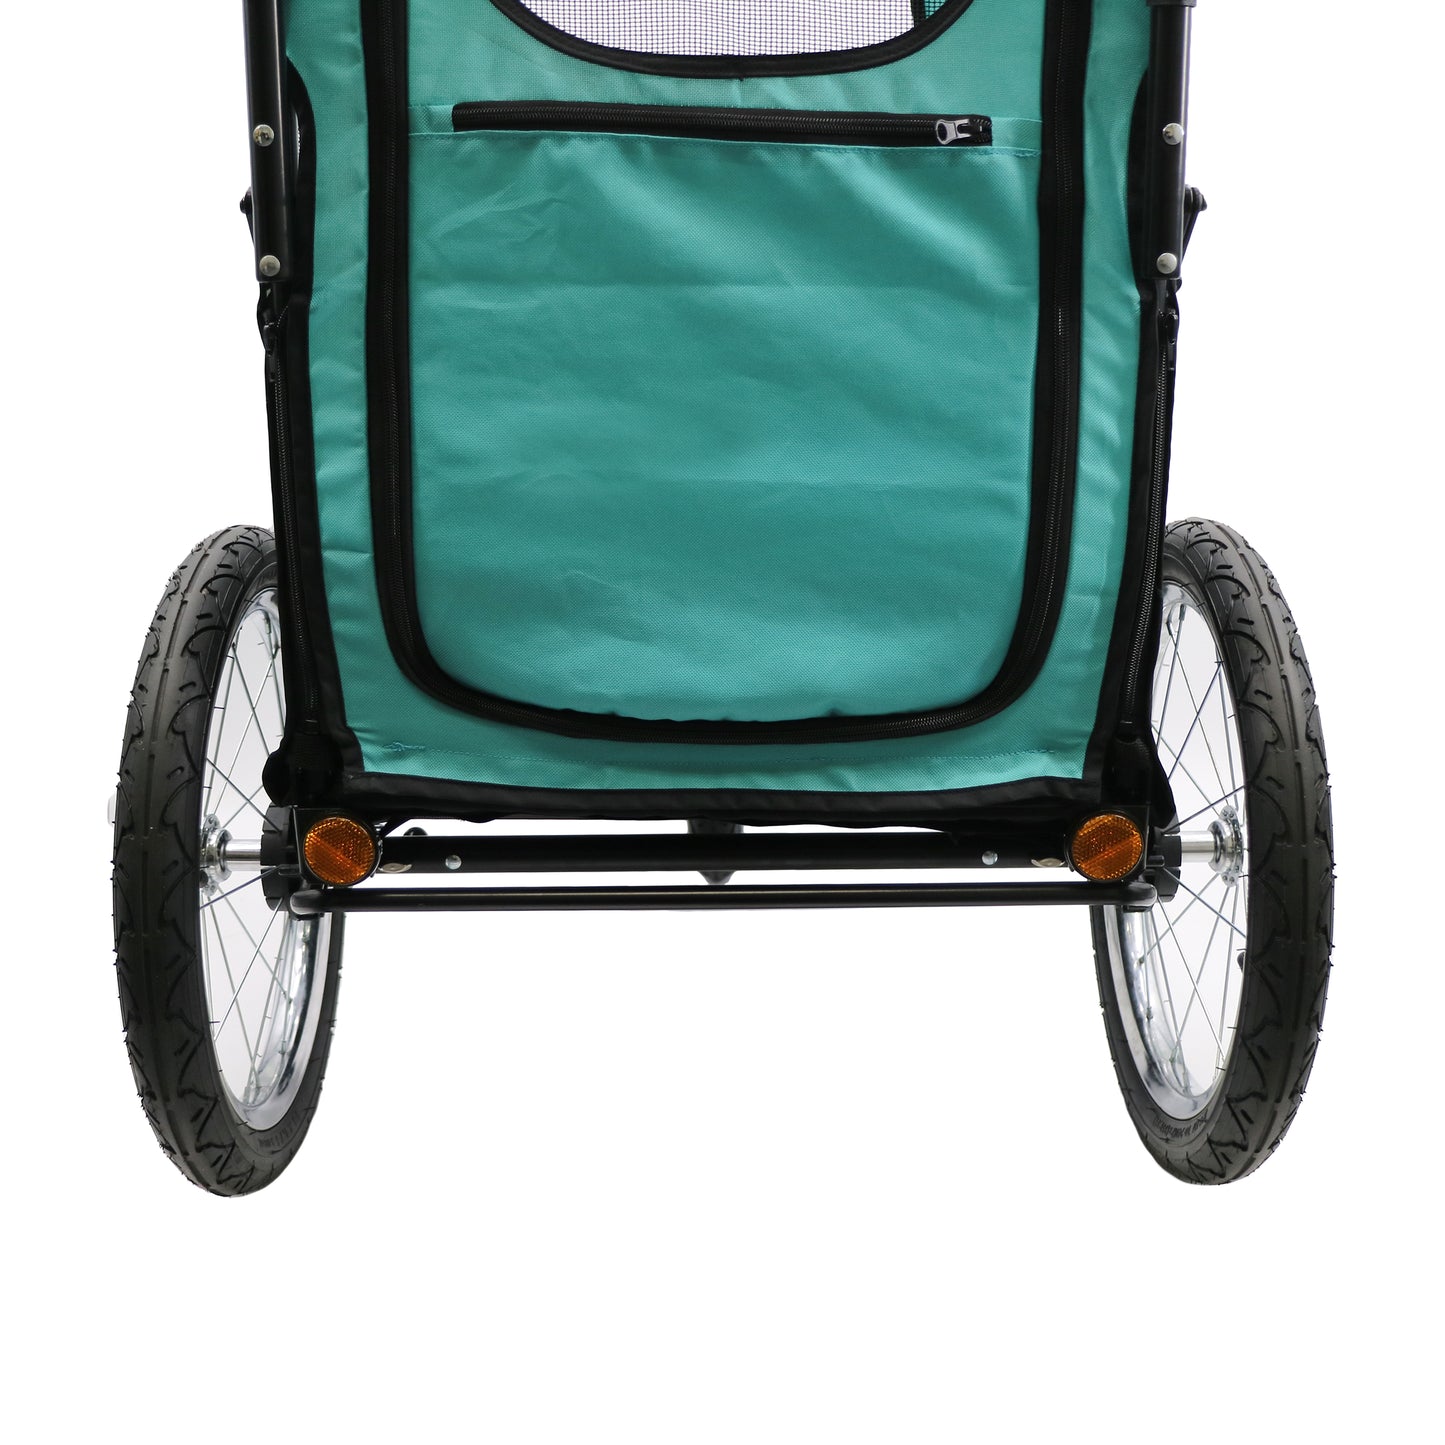 OPEN-BOX | 3 in 1 Pet Stroller / Bike Trailer in Turquoise